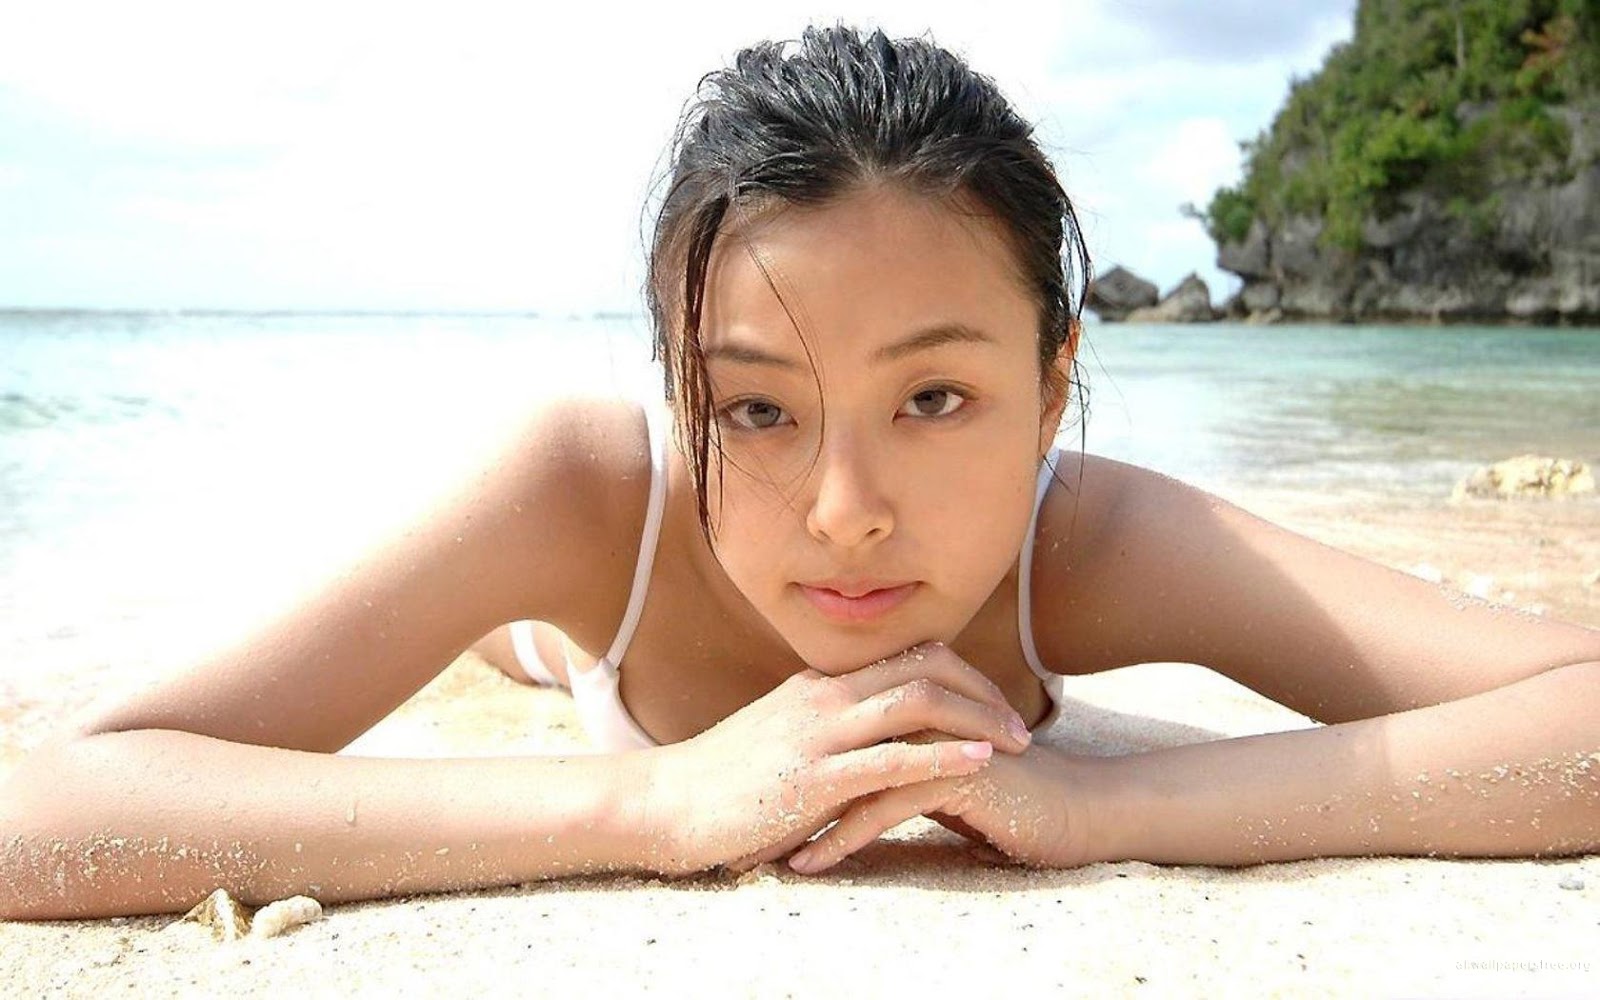 Virgin nude asian teen model and actress